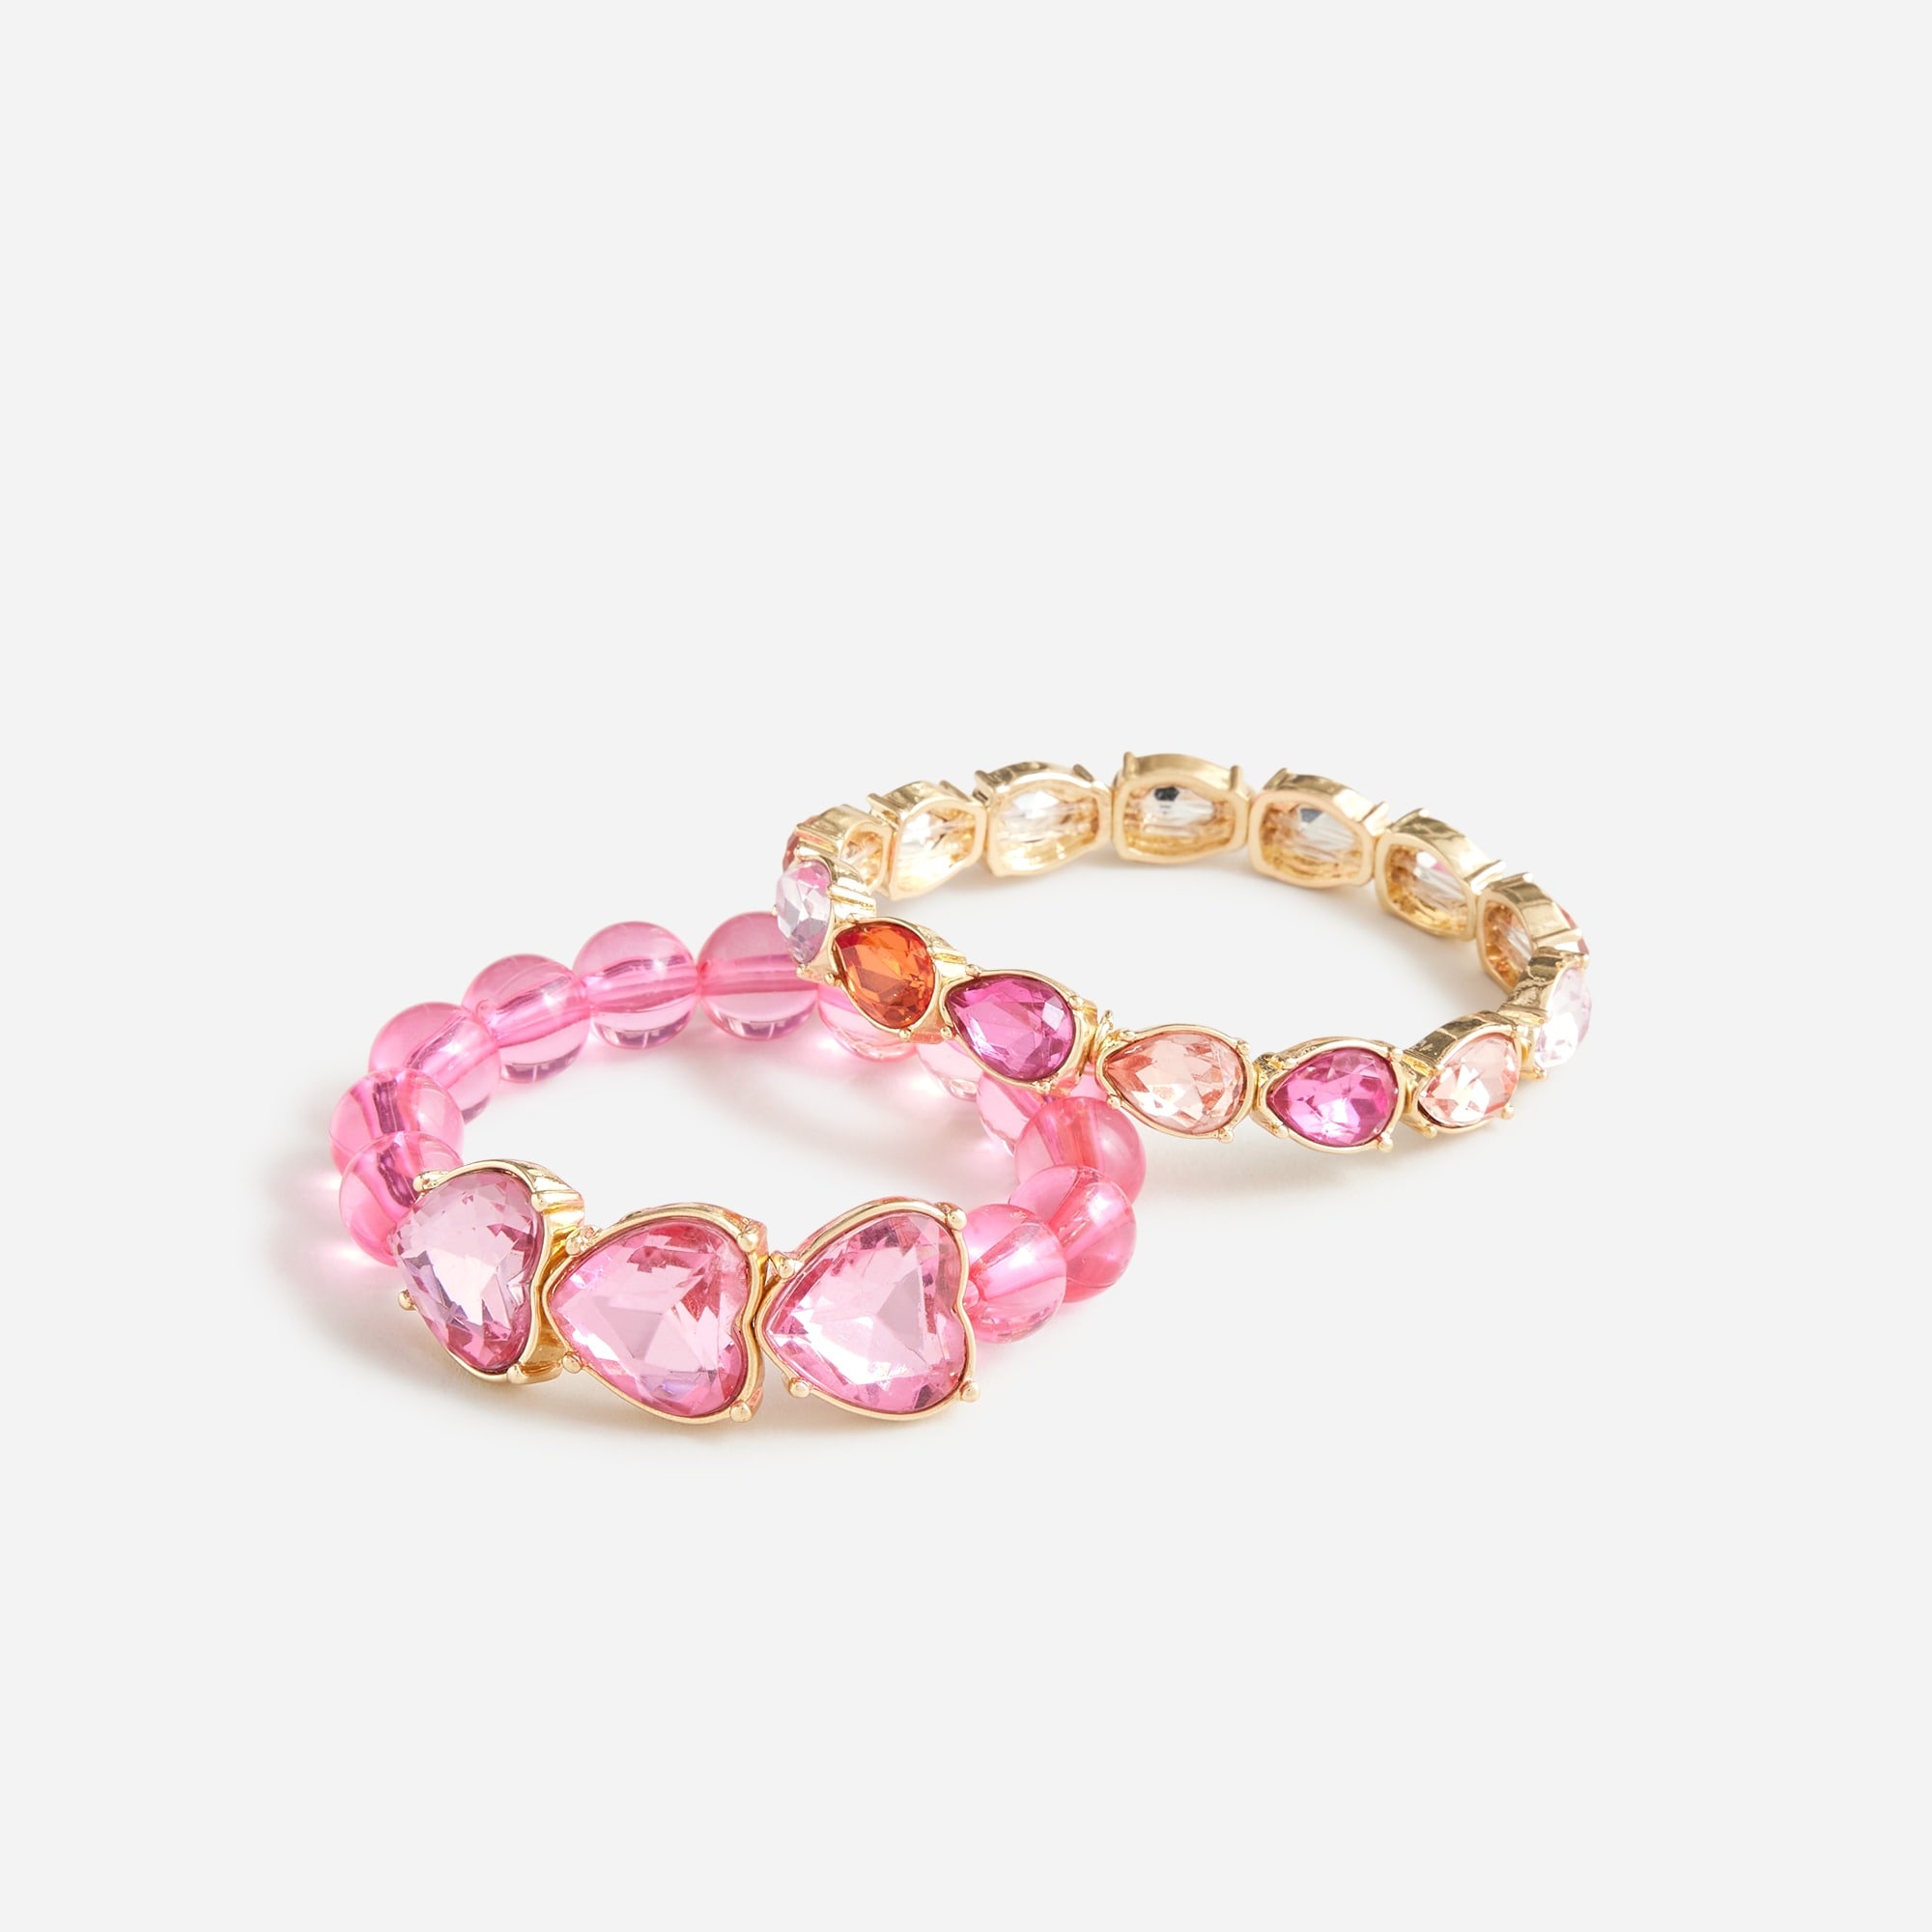 girls Girls' heart charm bracelets set